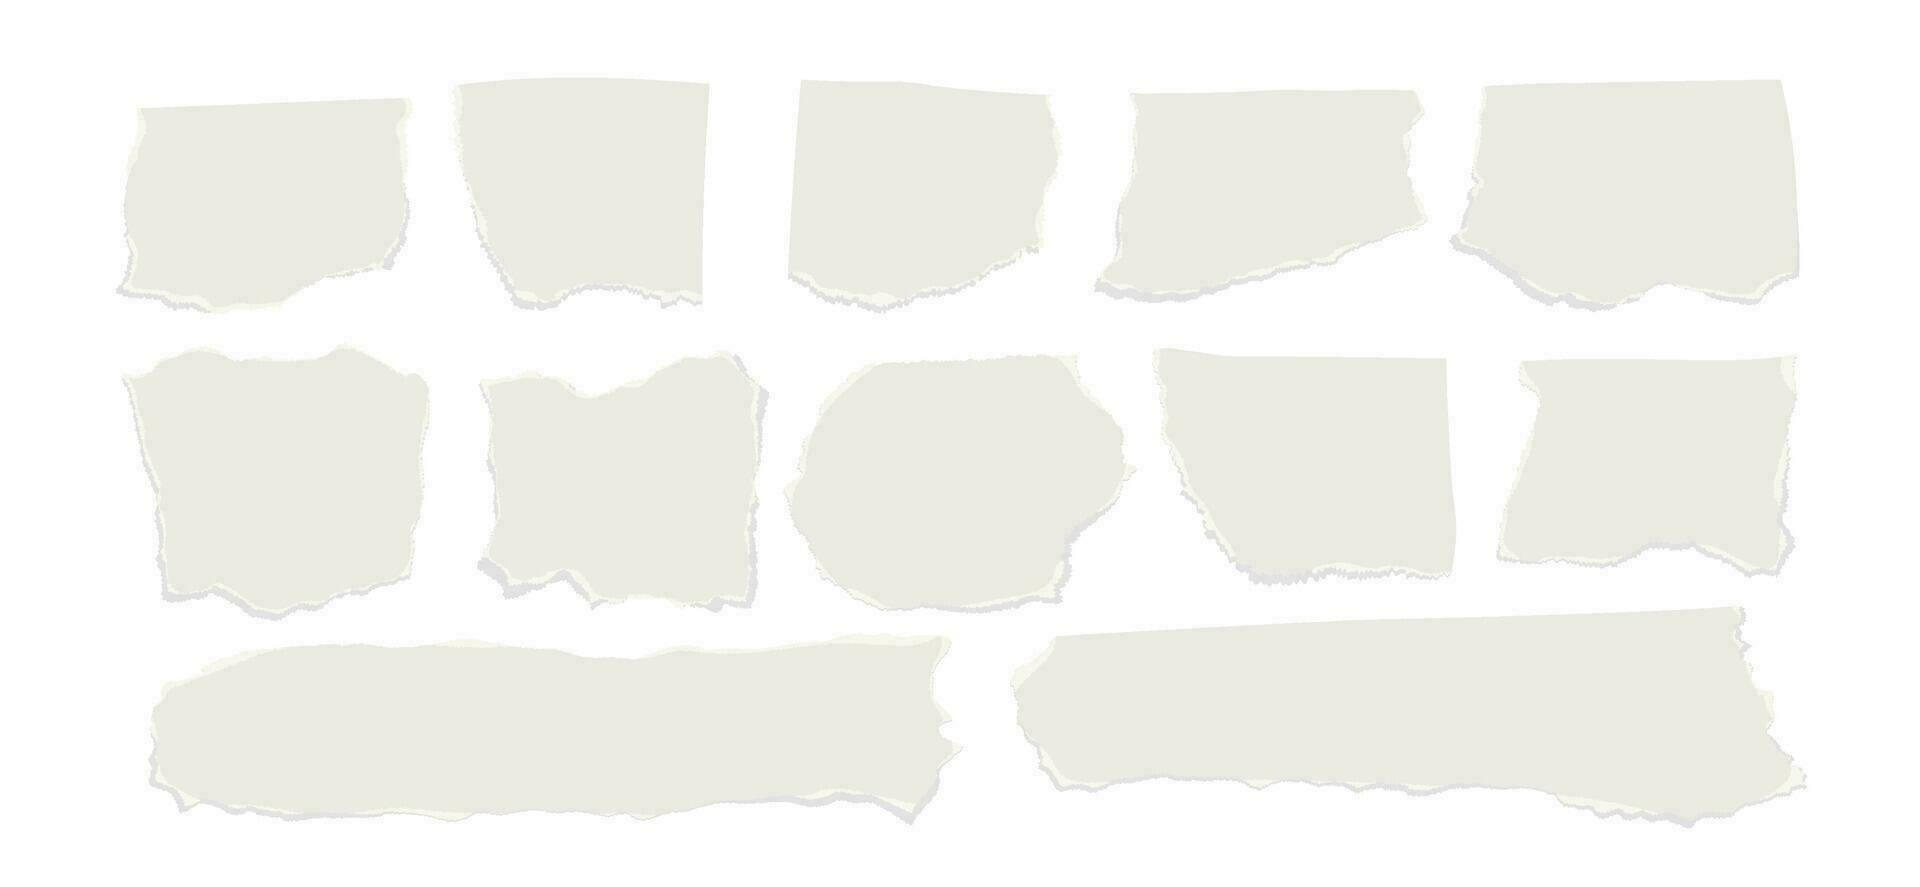 uppsättning av trasig rev papper ark isolerat på en transparent bakgrund. vektor illustration.